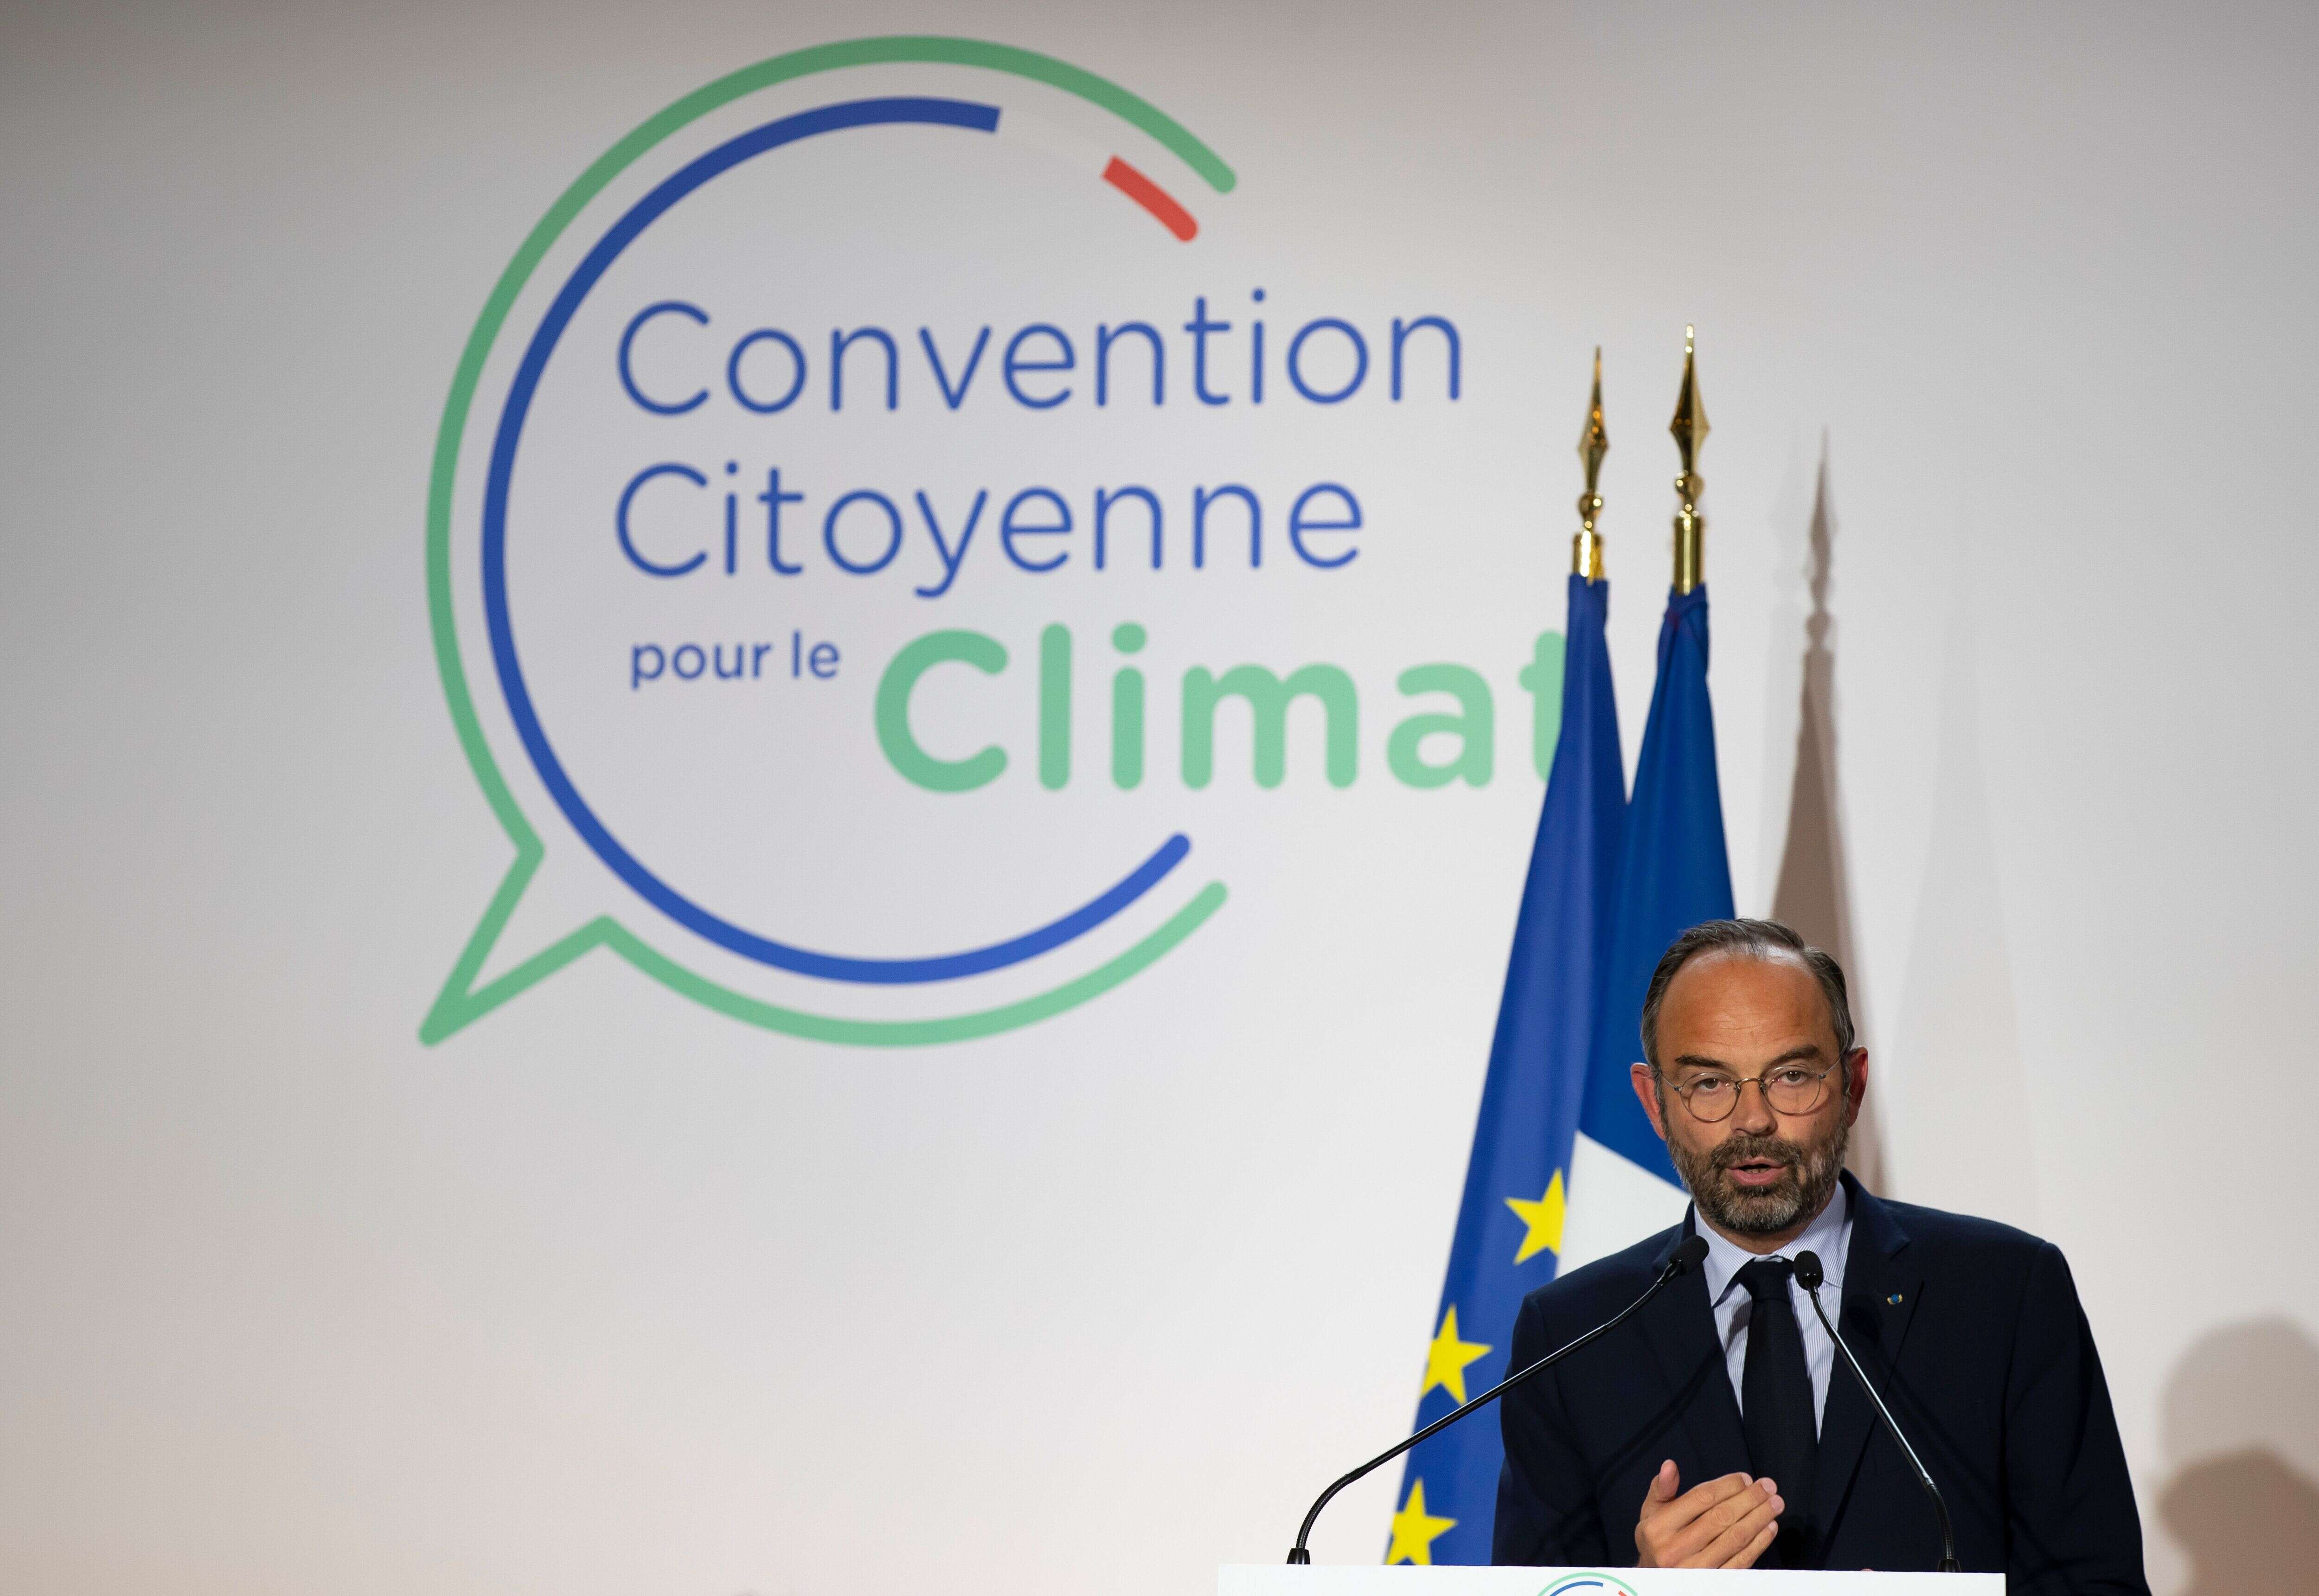 Face au coronavirus, la Convention citoyenne propose un nouveau modèle économique et sociétal (Photo: Edouard Philippe lors du lancement de la Convention citoyenne le 4 octobre 2019)